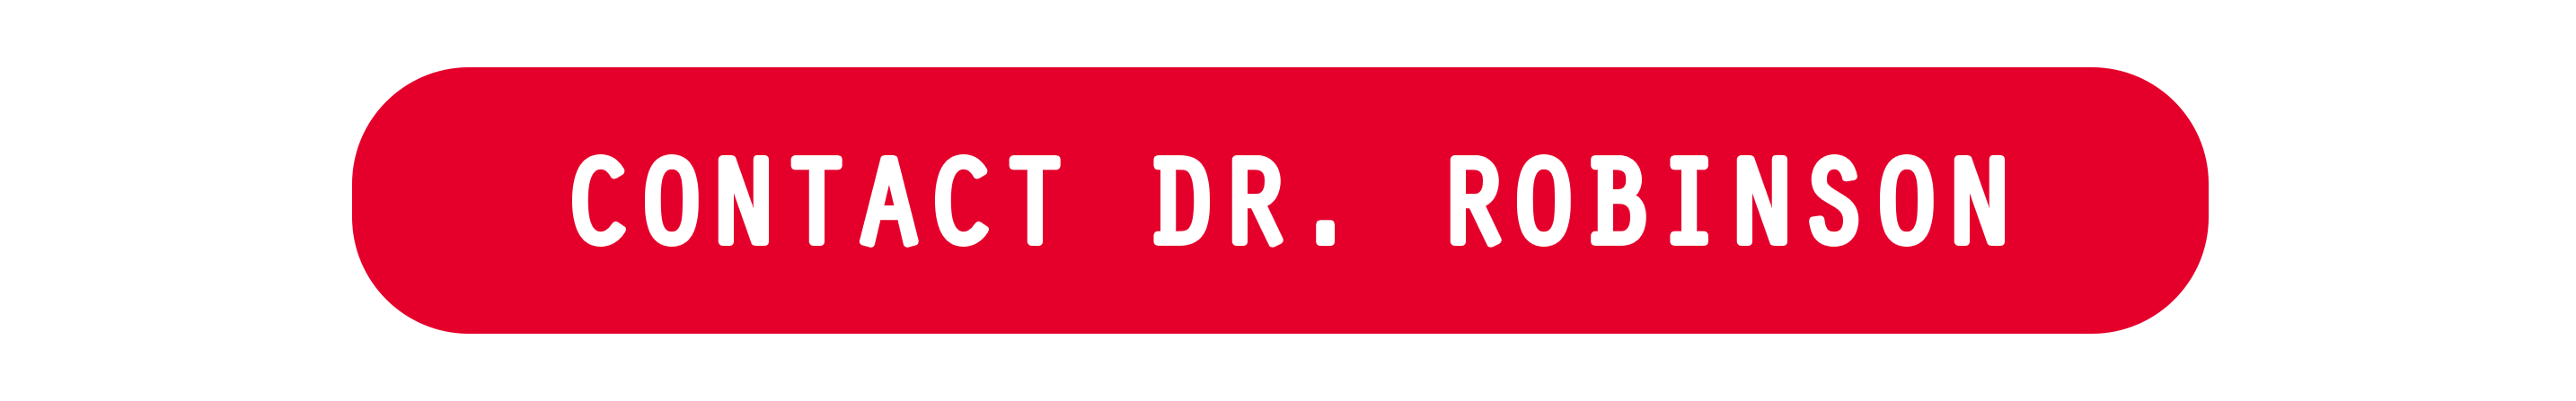 Contact Dr. Robinson